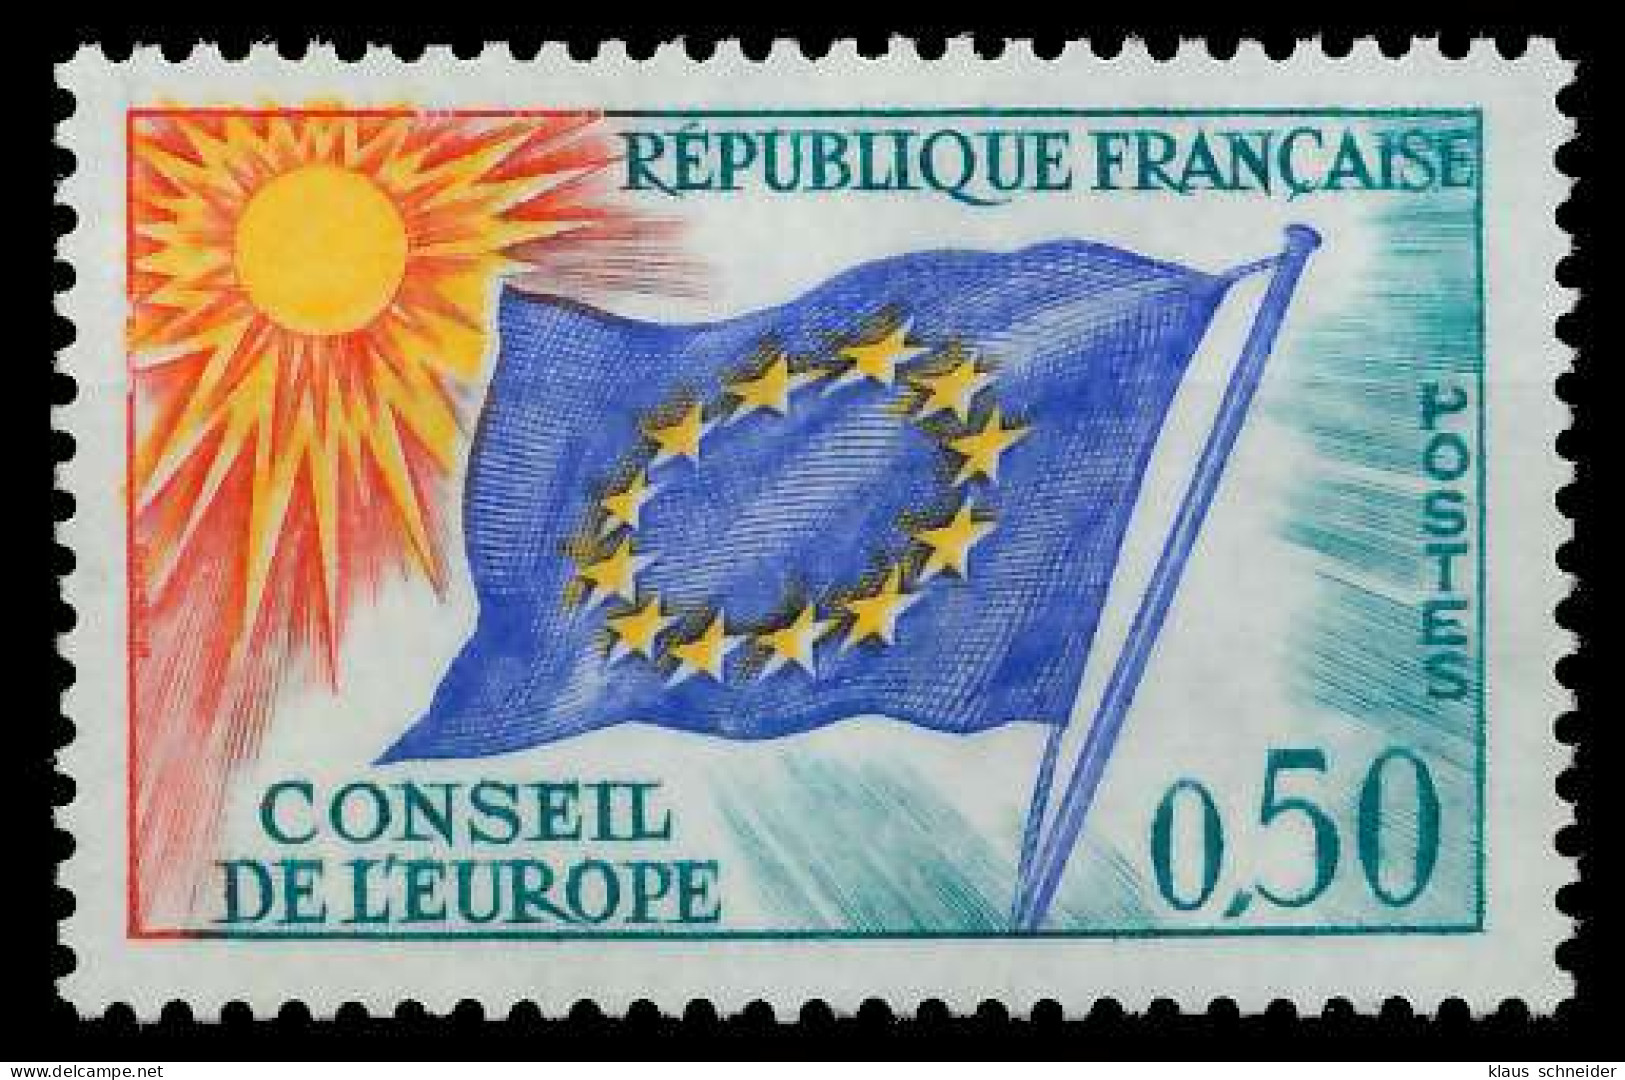 FRANKREICH DIENSTMARKEN EUROPARAT Nr 15 Postfrisch SADFBF6 - Mint/Hinged